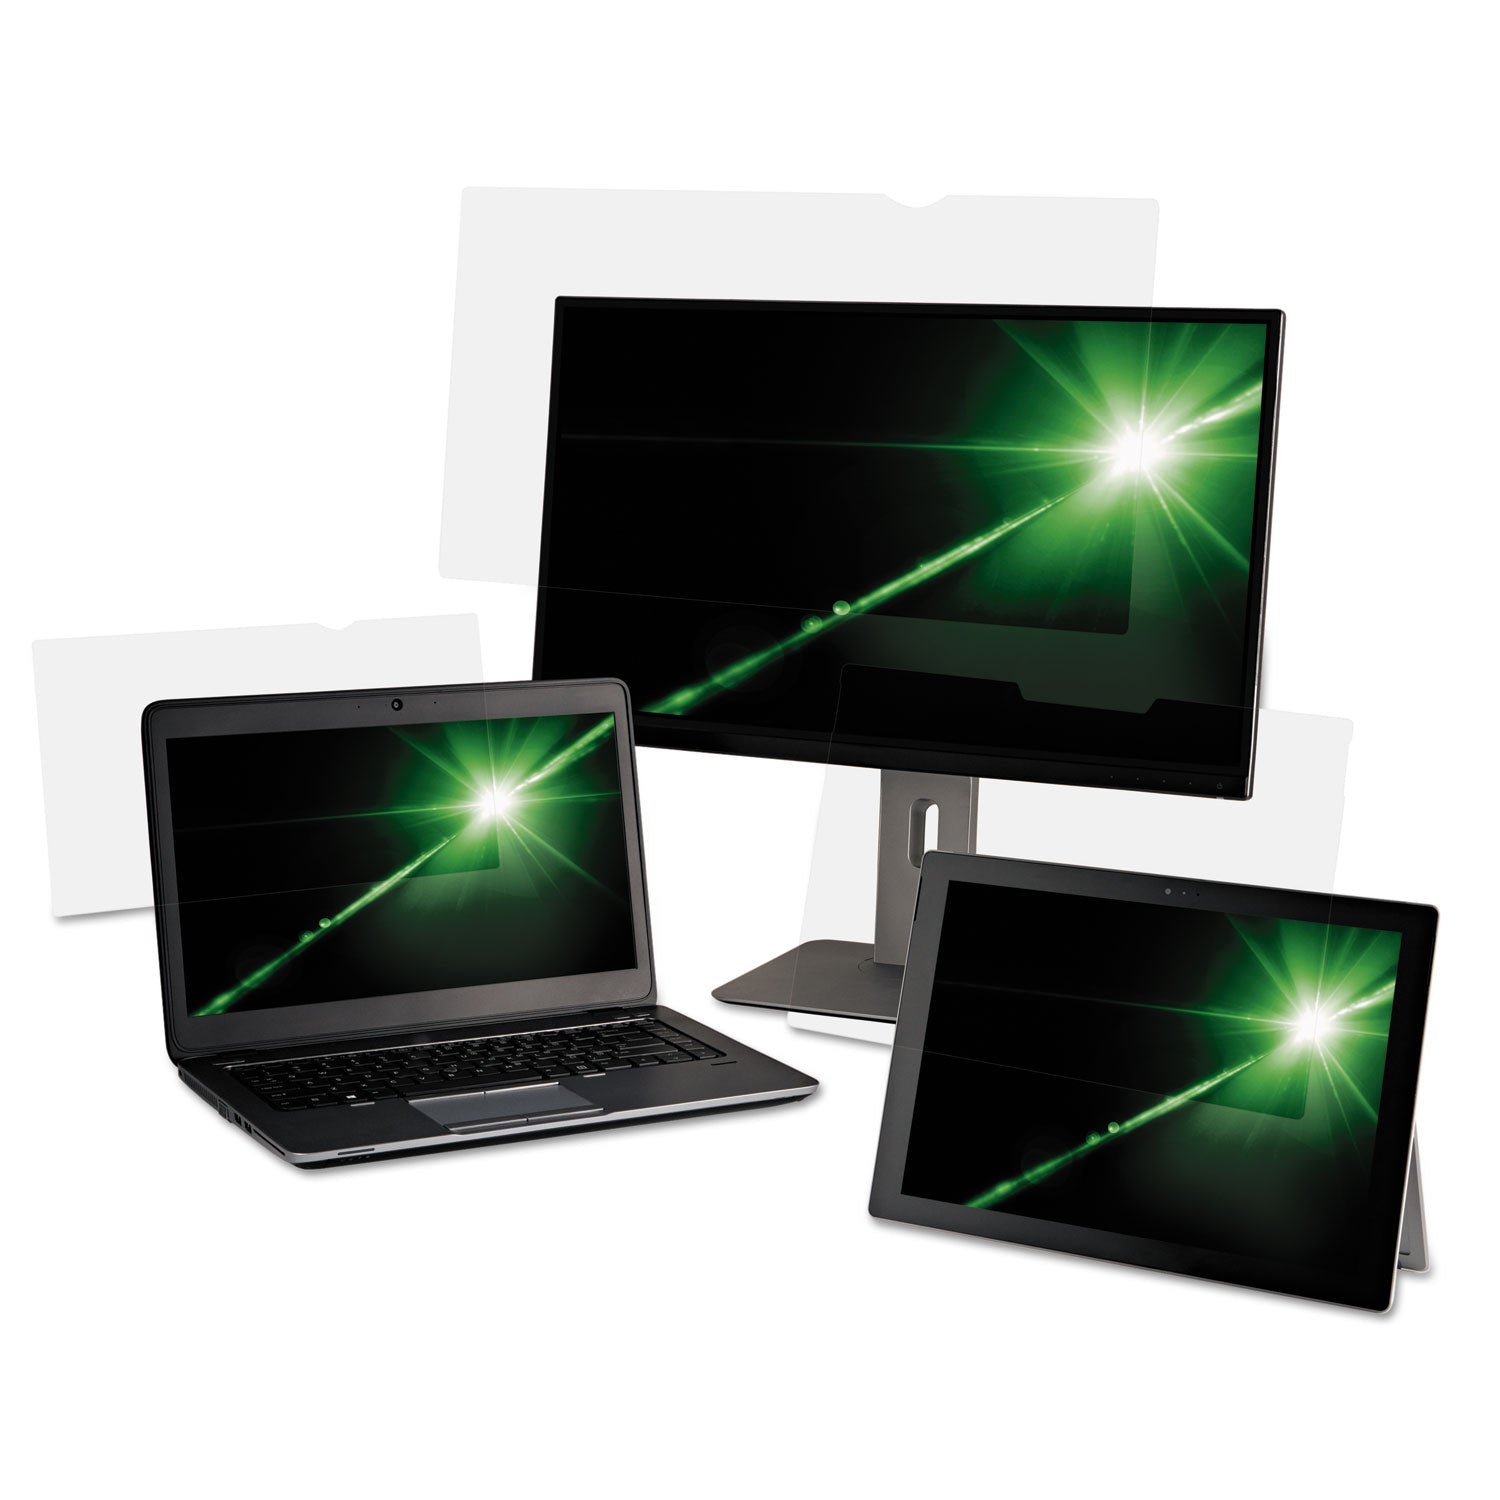 Antiglare Frameless Filter for 14" Widescreen Laptop, 16:9 Aspect Ratio - 